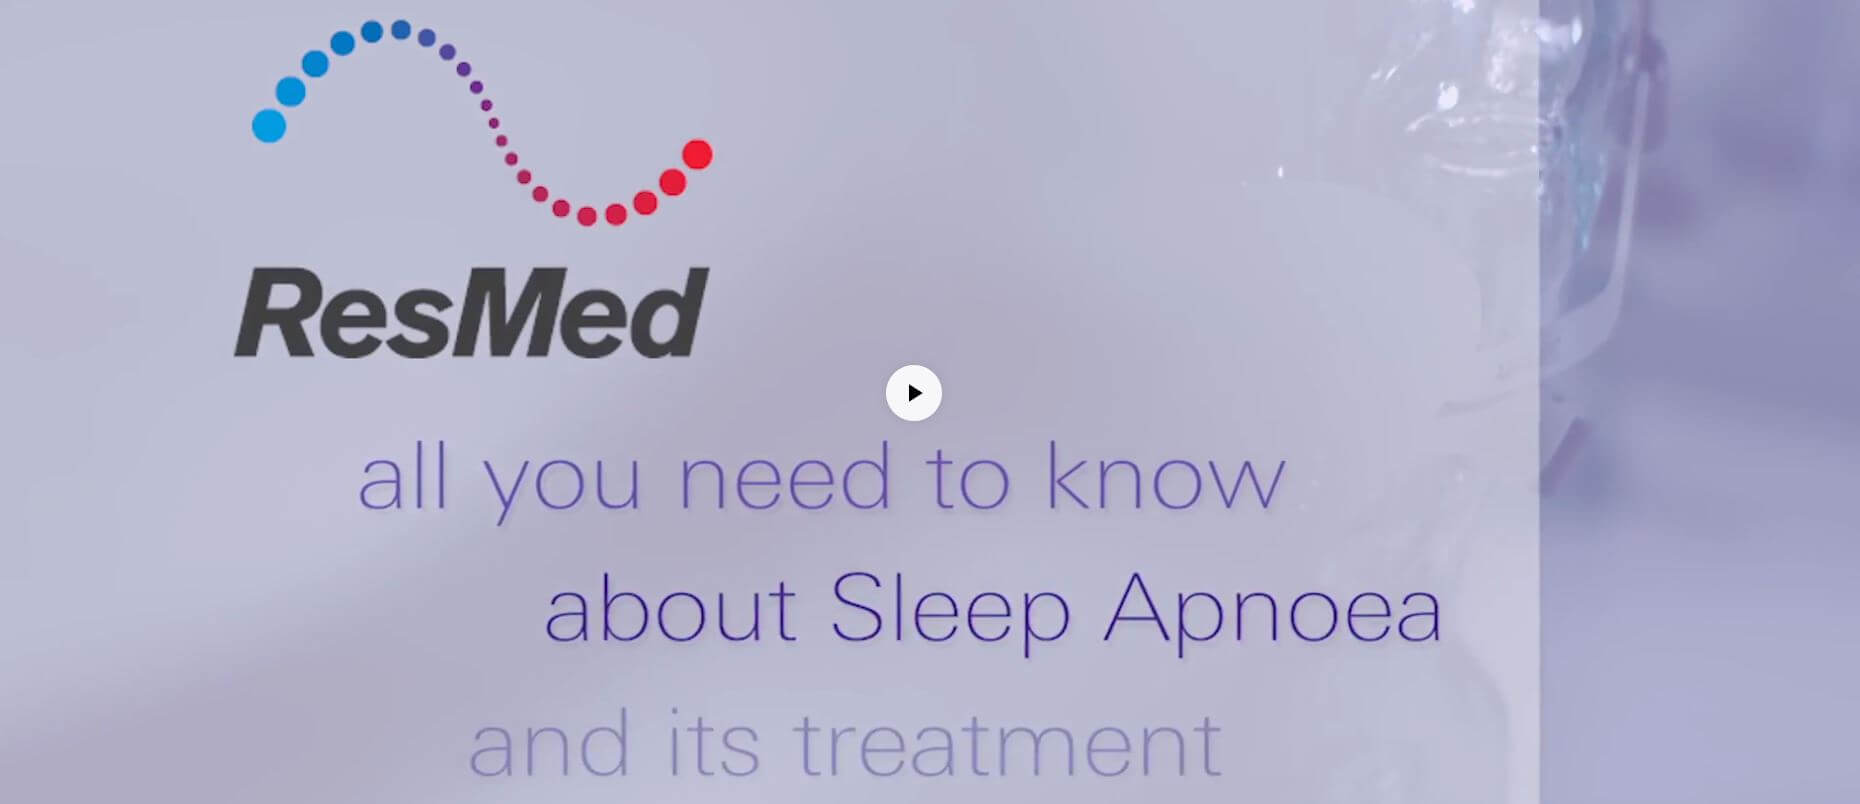 Sleep apnea treatments in video by ResMed